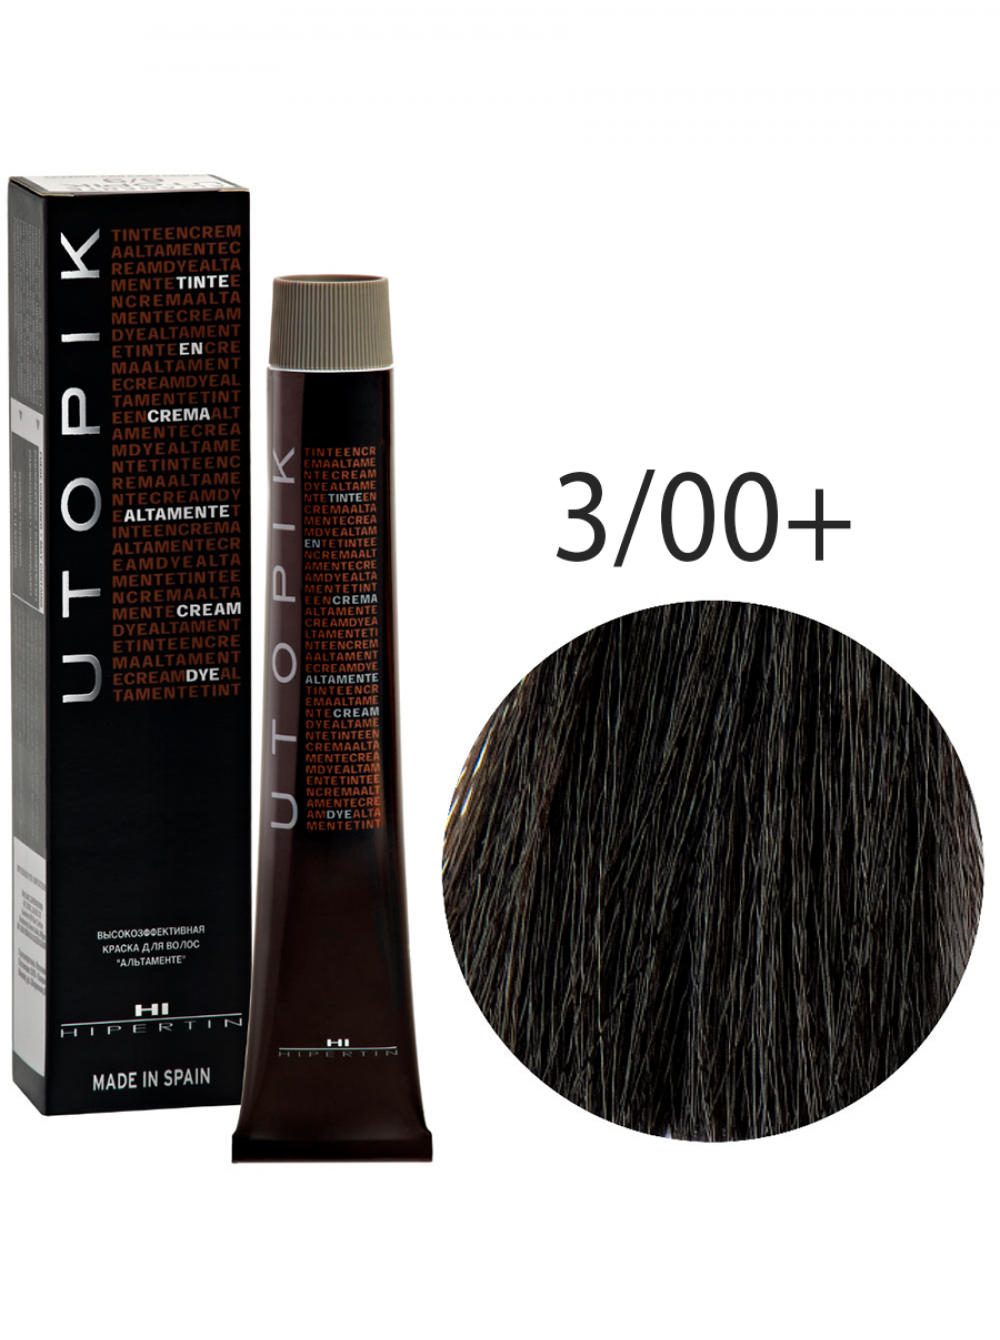 Краска для волос Utopik Altamente 3/00+U, тёмный шатен интенсивный, 60 мл